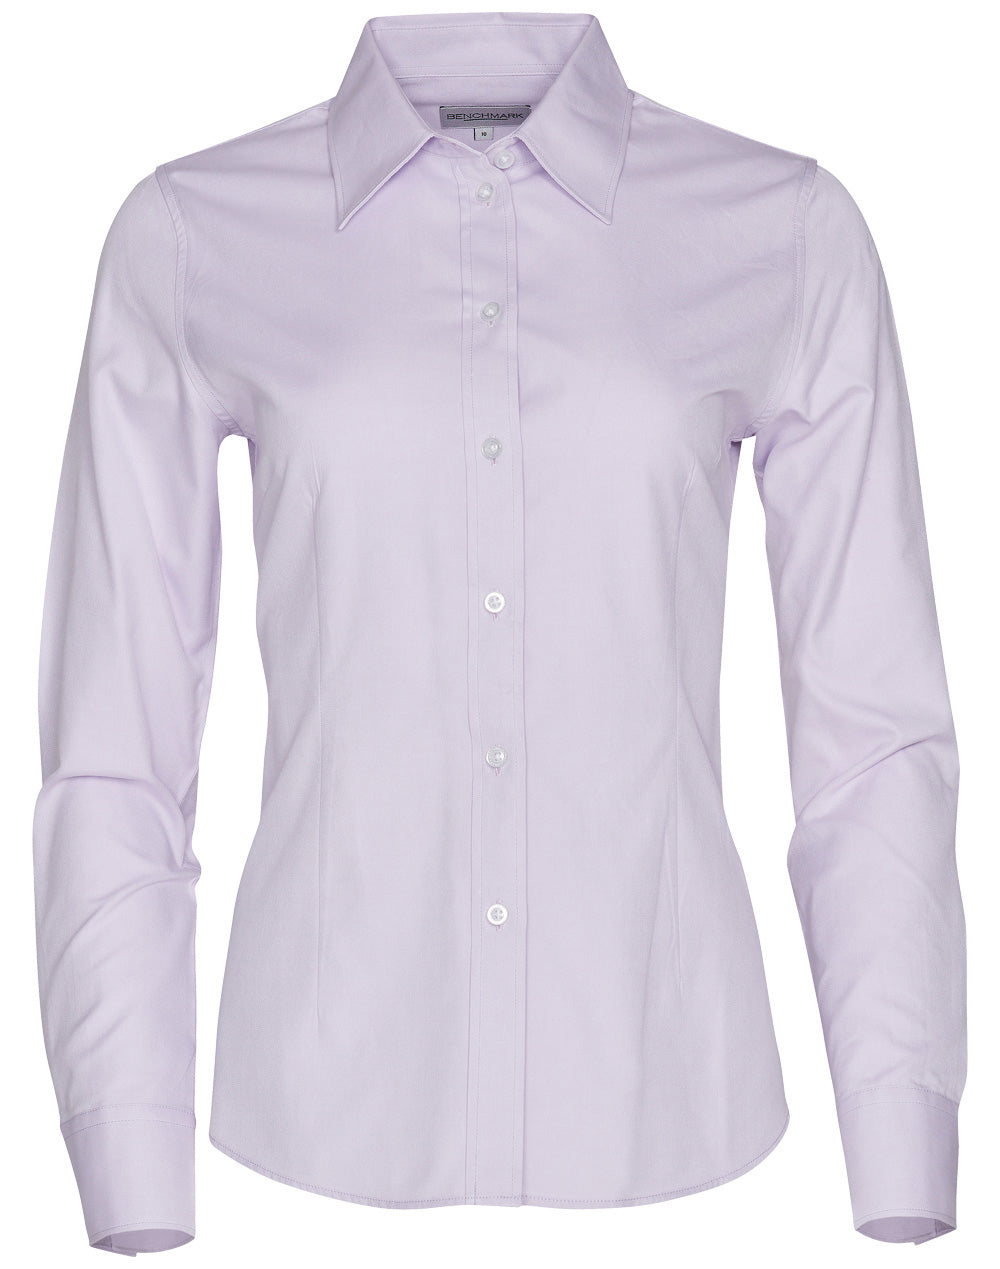 Winning Spirit-Women's CVC Oxford Long Sleeve Shirt -M8040L